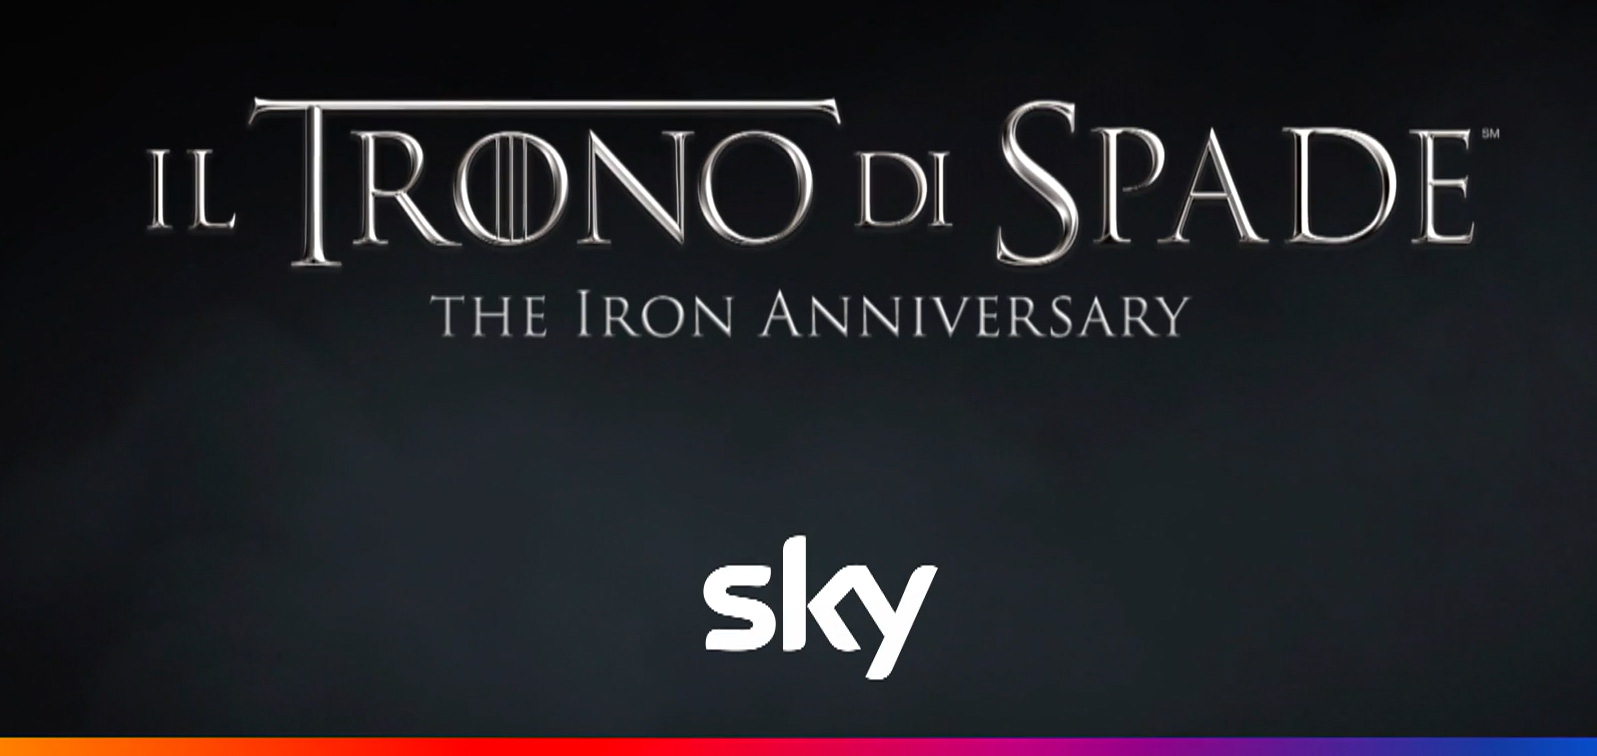 Il Trono di Spade - The Iron Anniversary